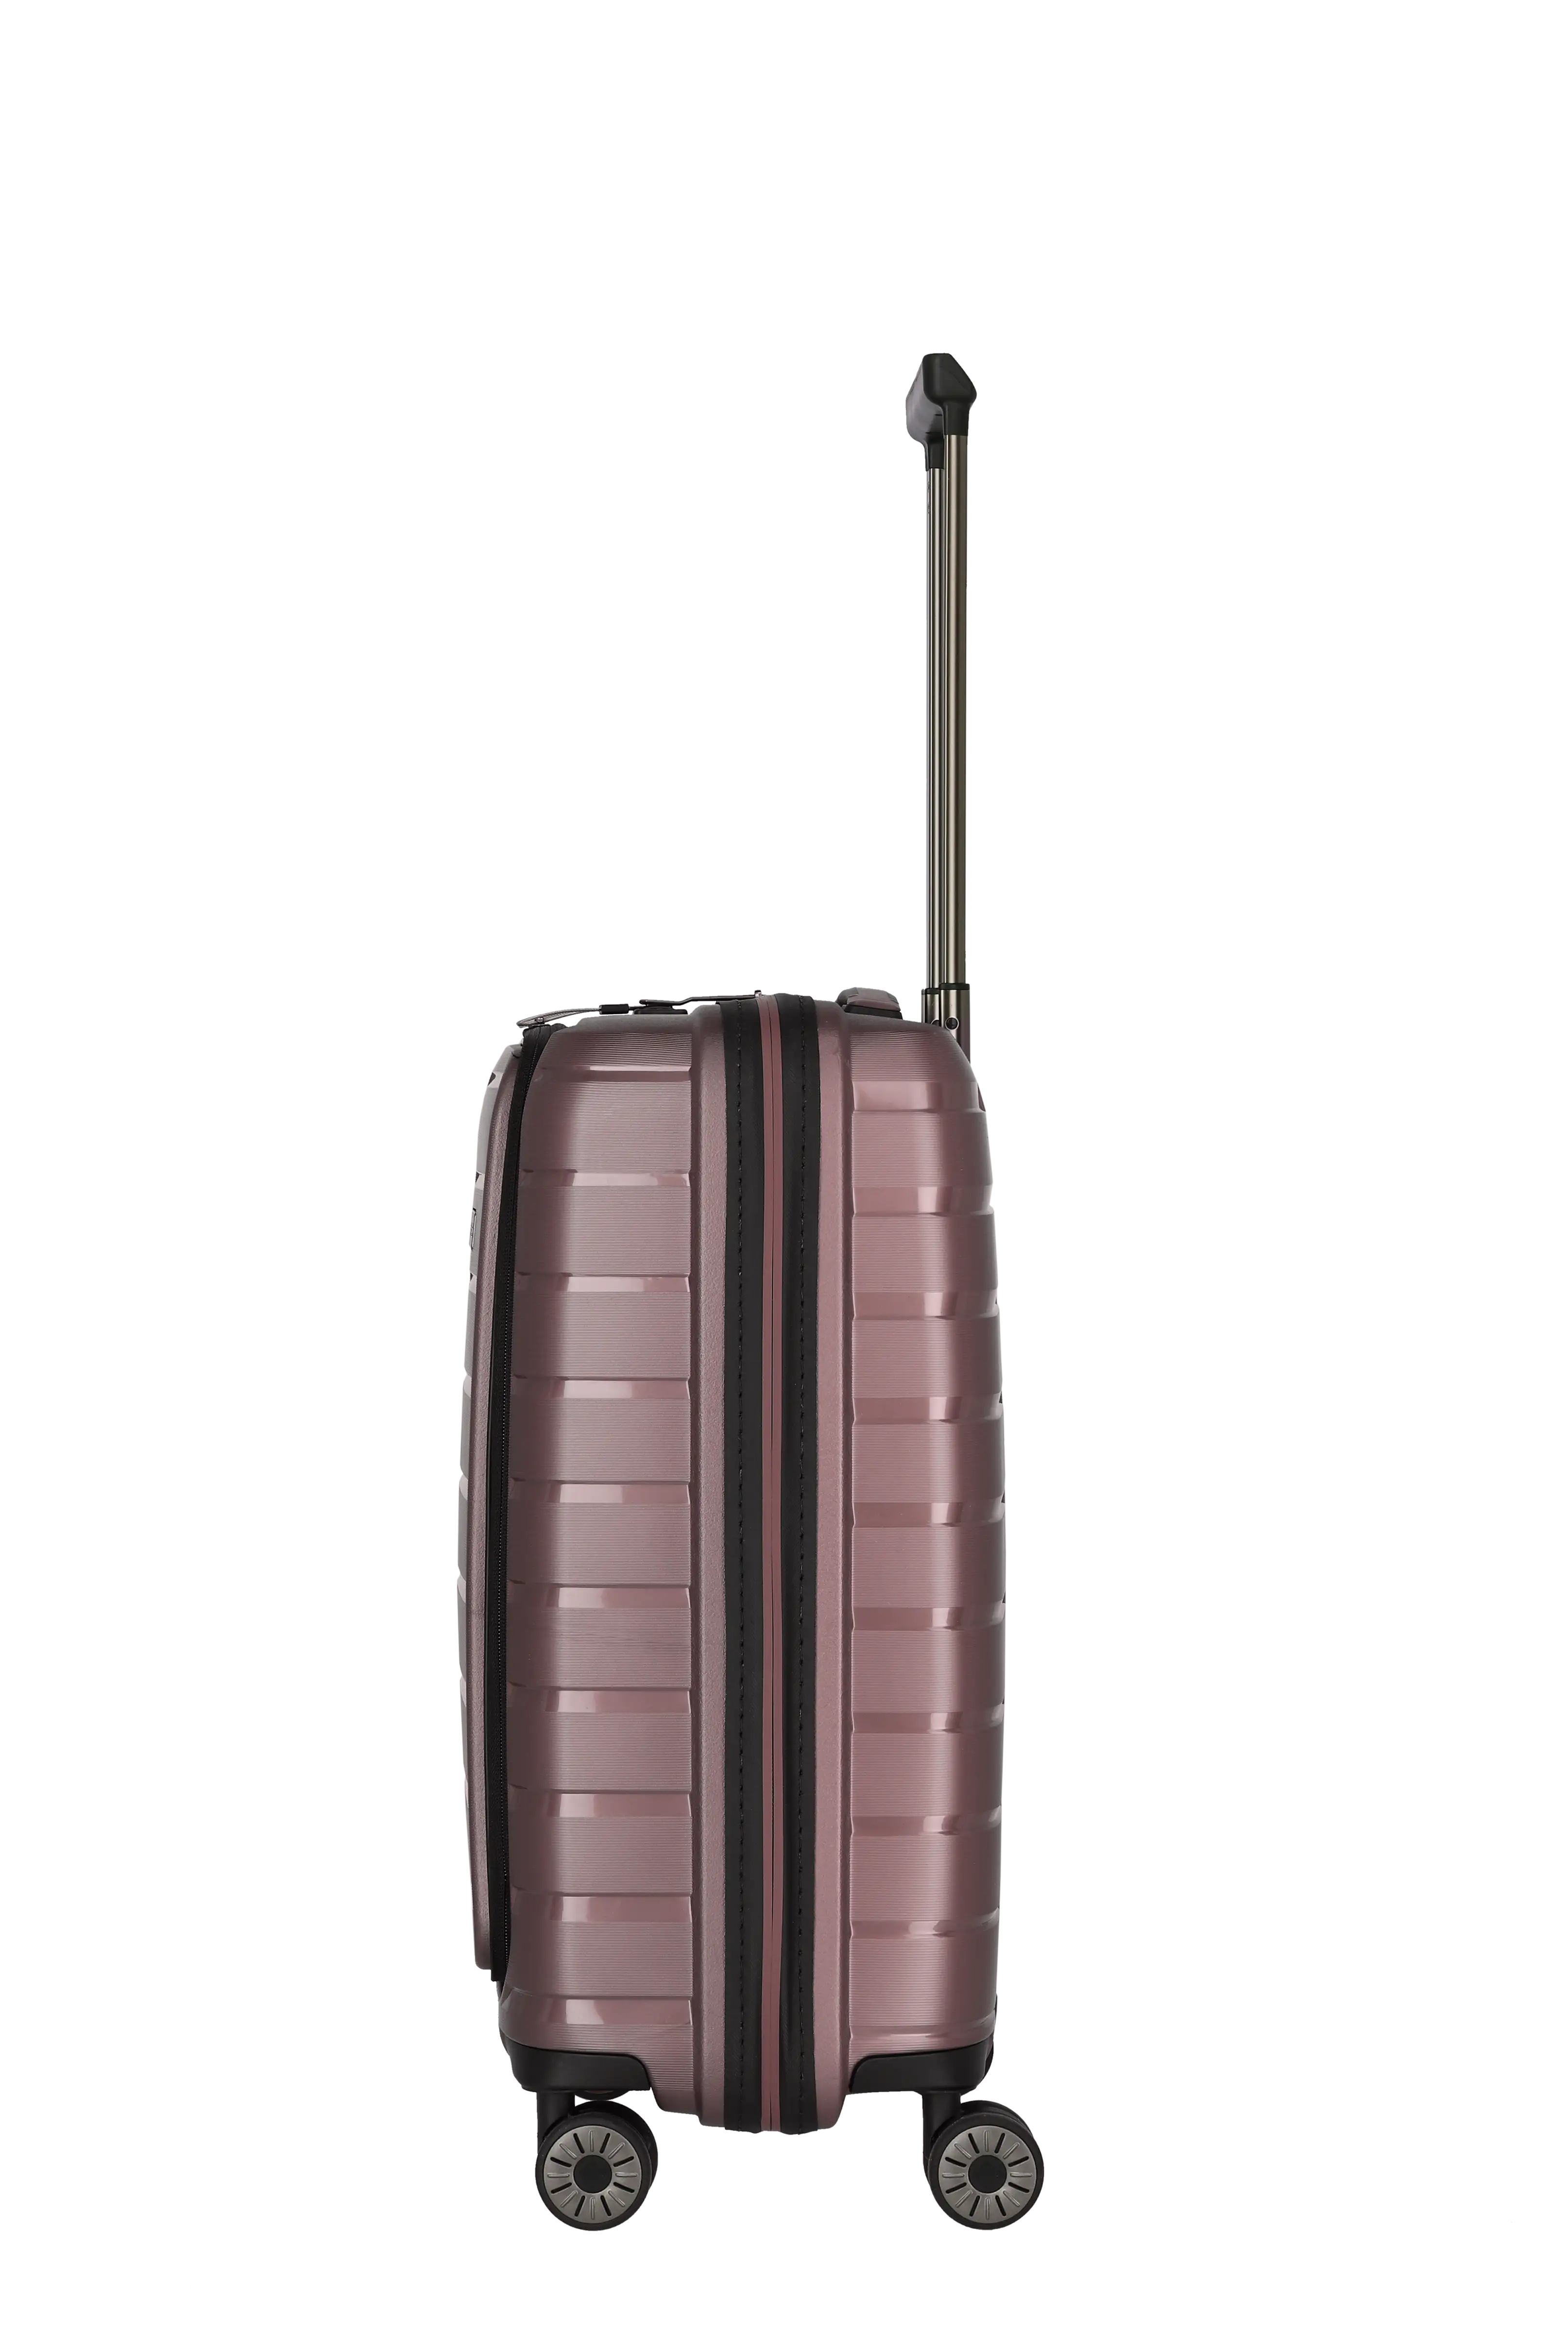 travelite AirBase Koffer von der Seite in Flieder Größe S+